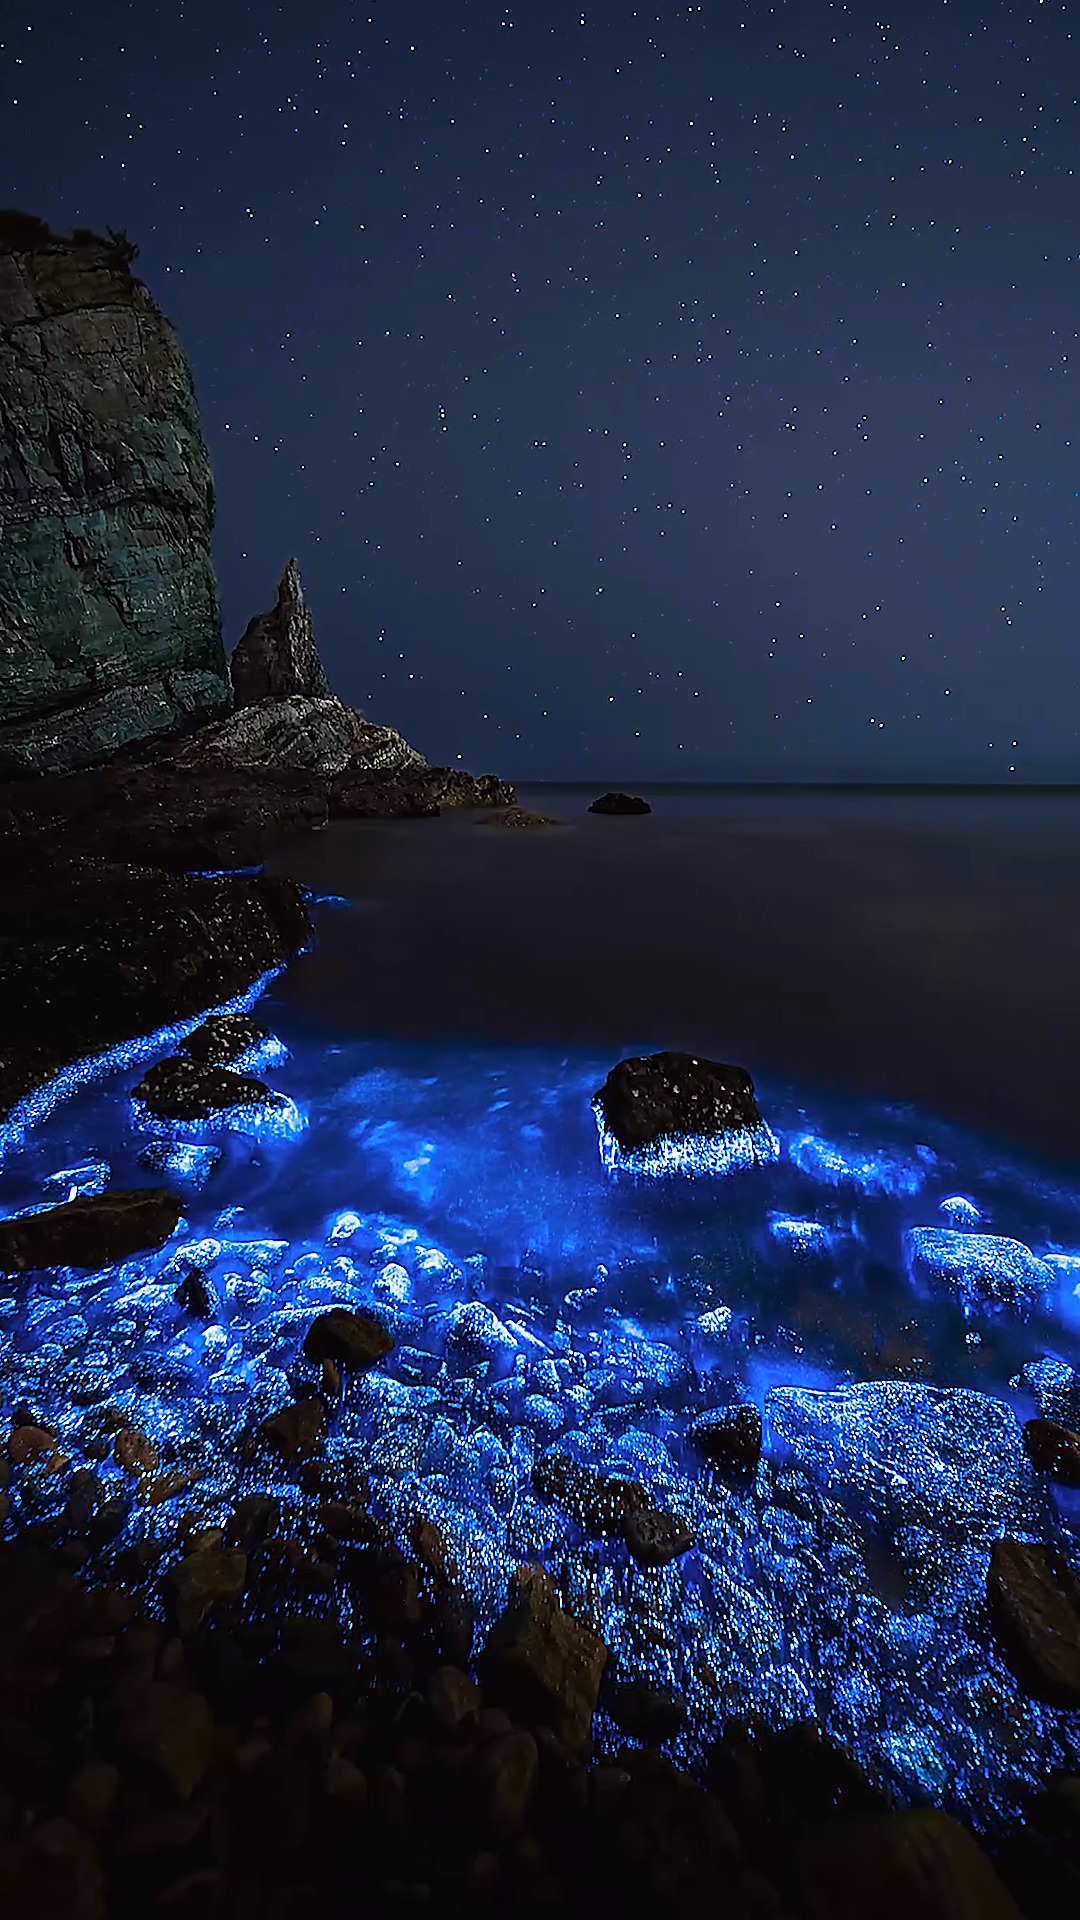 荧光海是由发光浮游生物夜光藻形成的,这是专程去大连小黑石海滩有幸